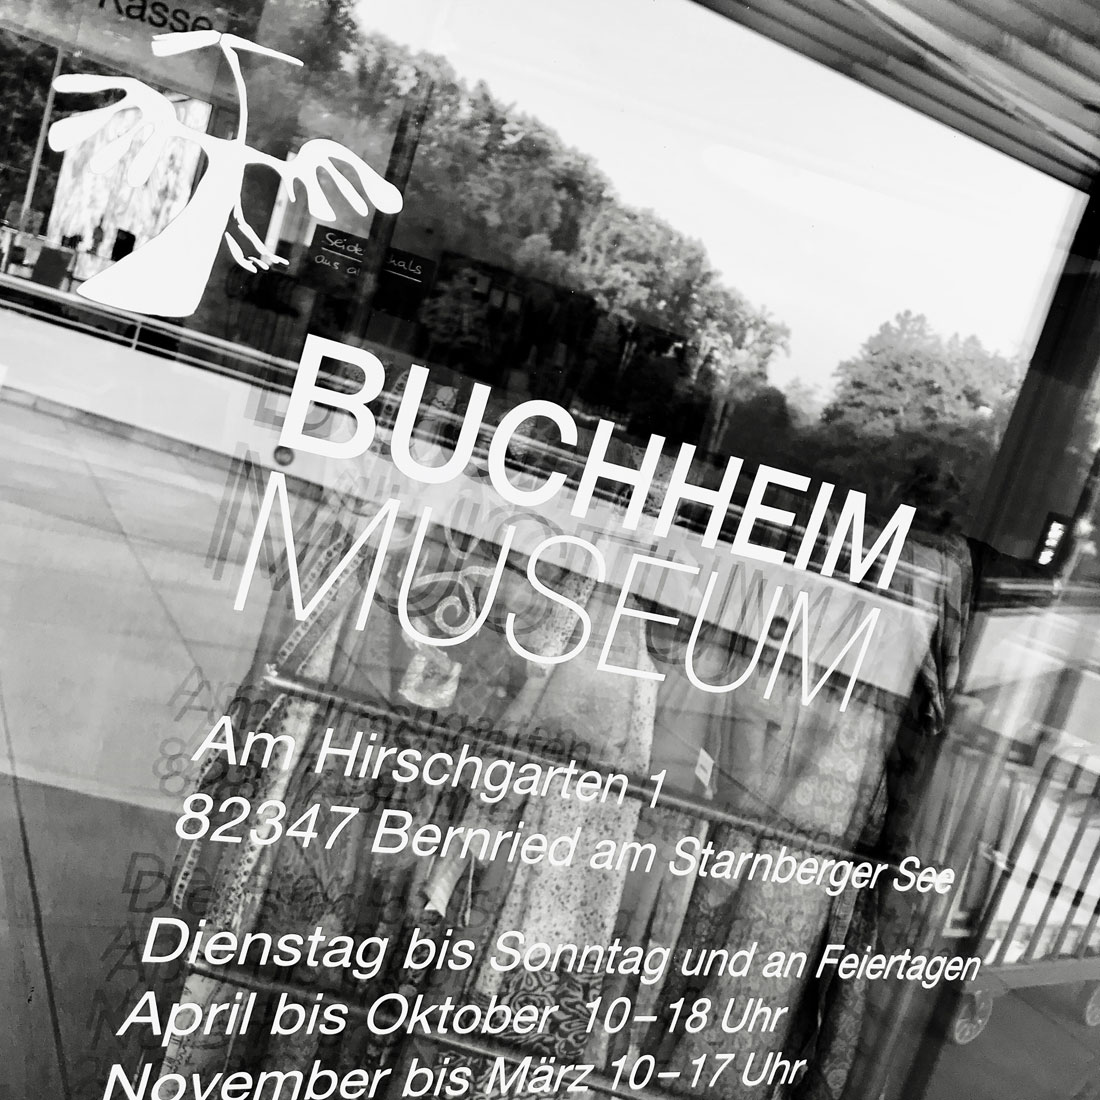 Susanna Ladda BUCHHEIM MUSEUM 2019 43. Bernrieder Kunstausstellung